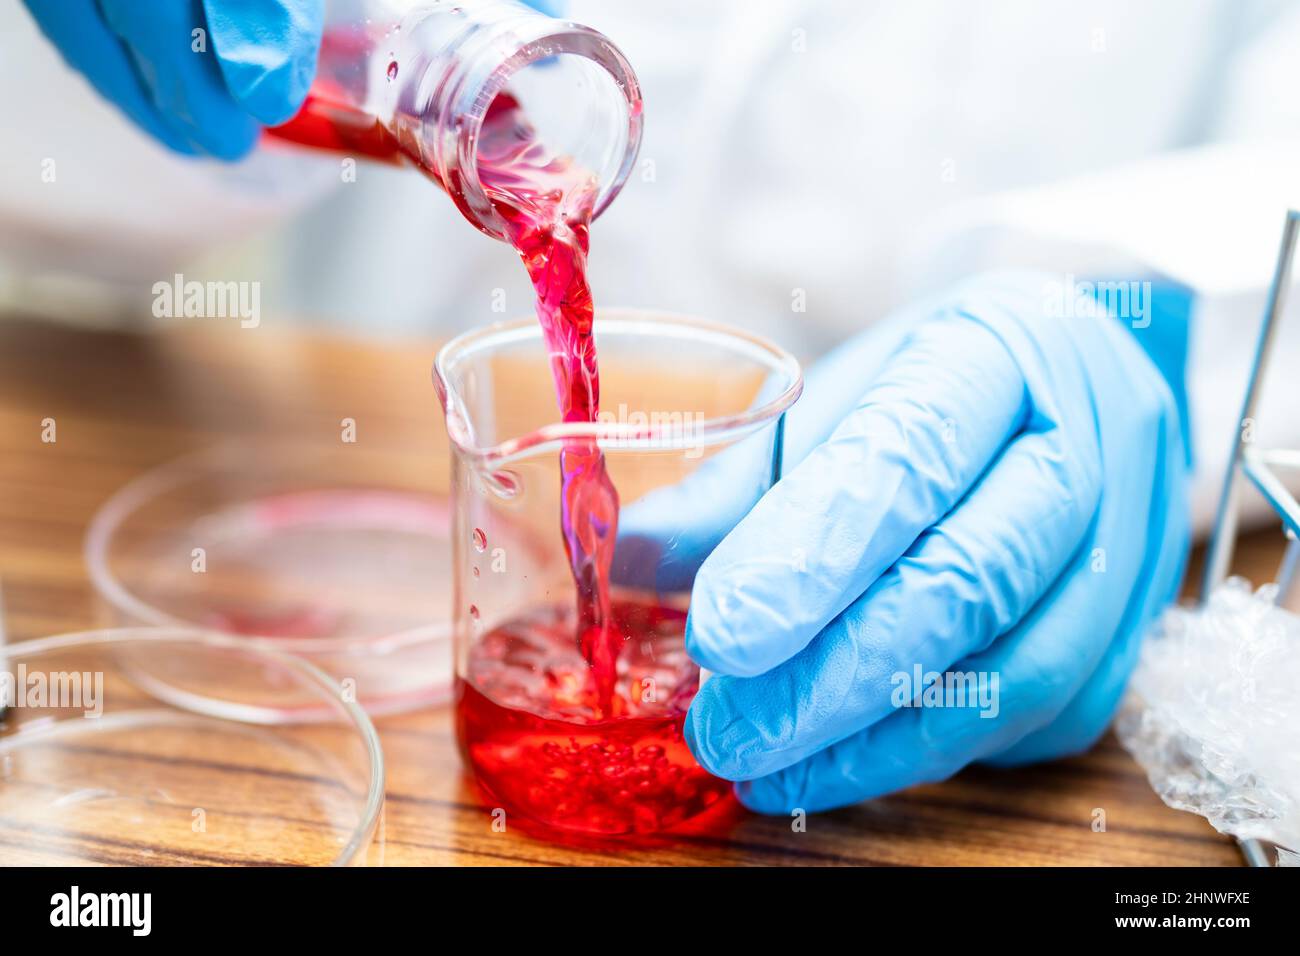 Erlenmeyerkolben, konische Kolben Glaswaren mit roter Farbe flüssige Lösung in der Wissenschaft Chemie Labor isoliert auf weißem Hintergrund. Stockfoto